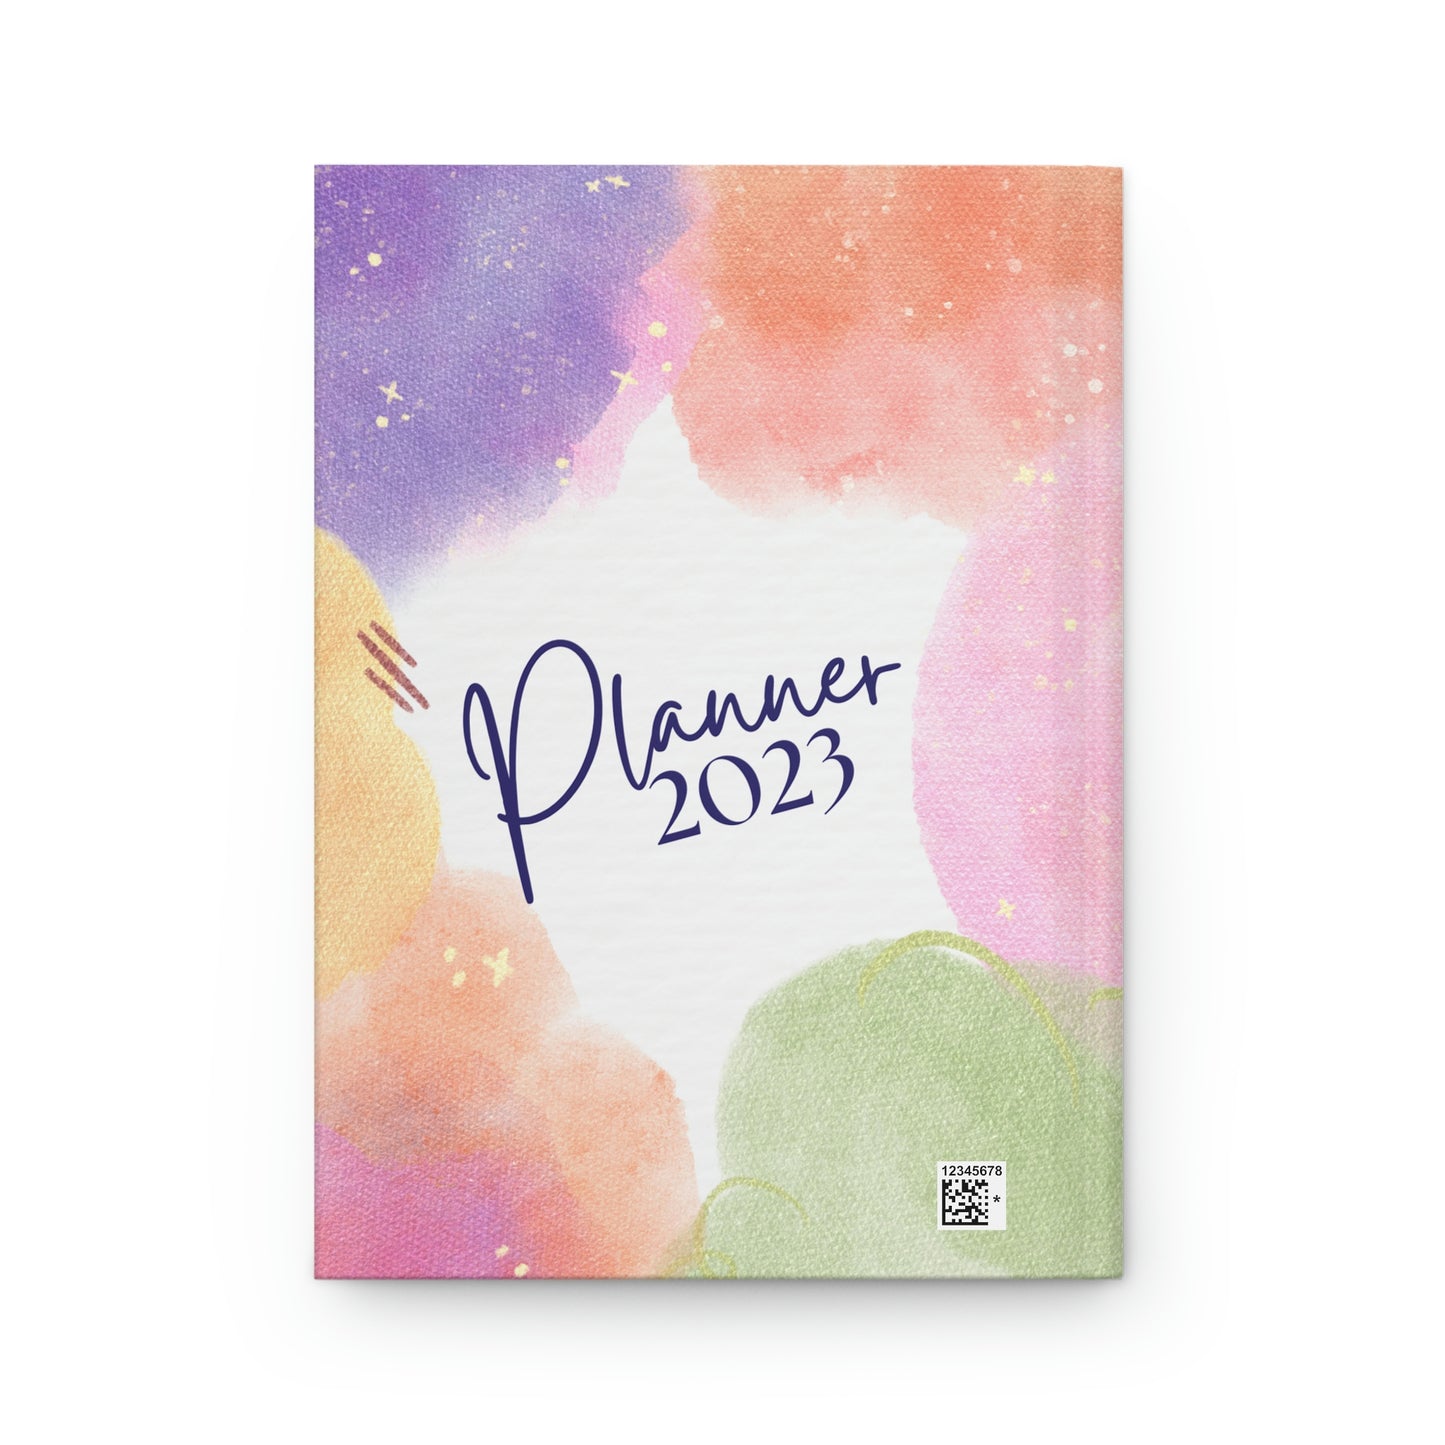 Planner 2023 - Hardcover Journal Matte